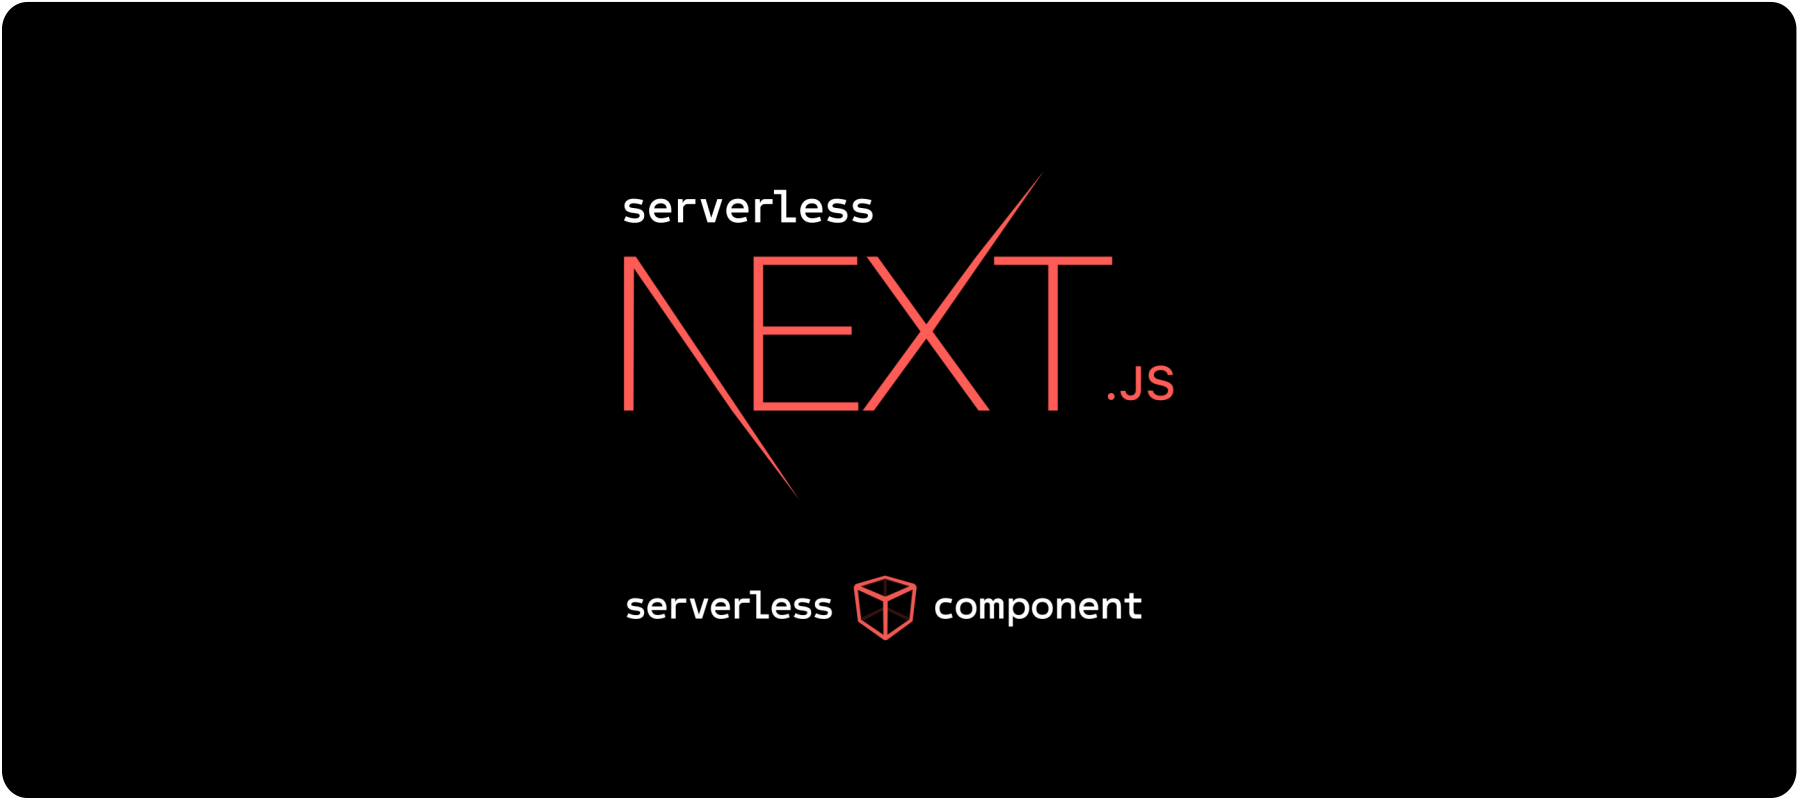 Cover Image for Next.js e Serverless: Como e por que usar Next.js em uma arquitetura serverless.